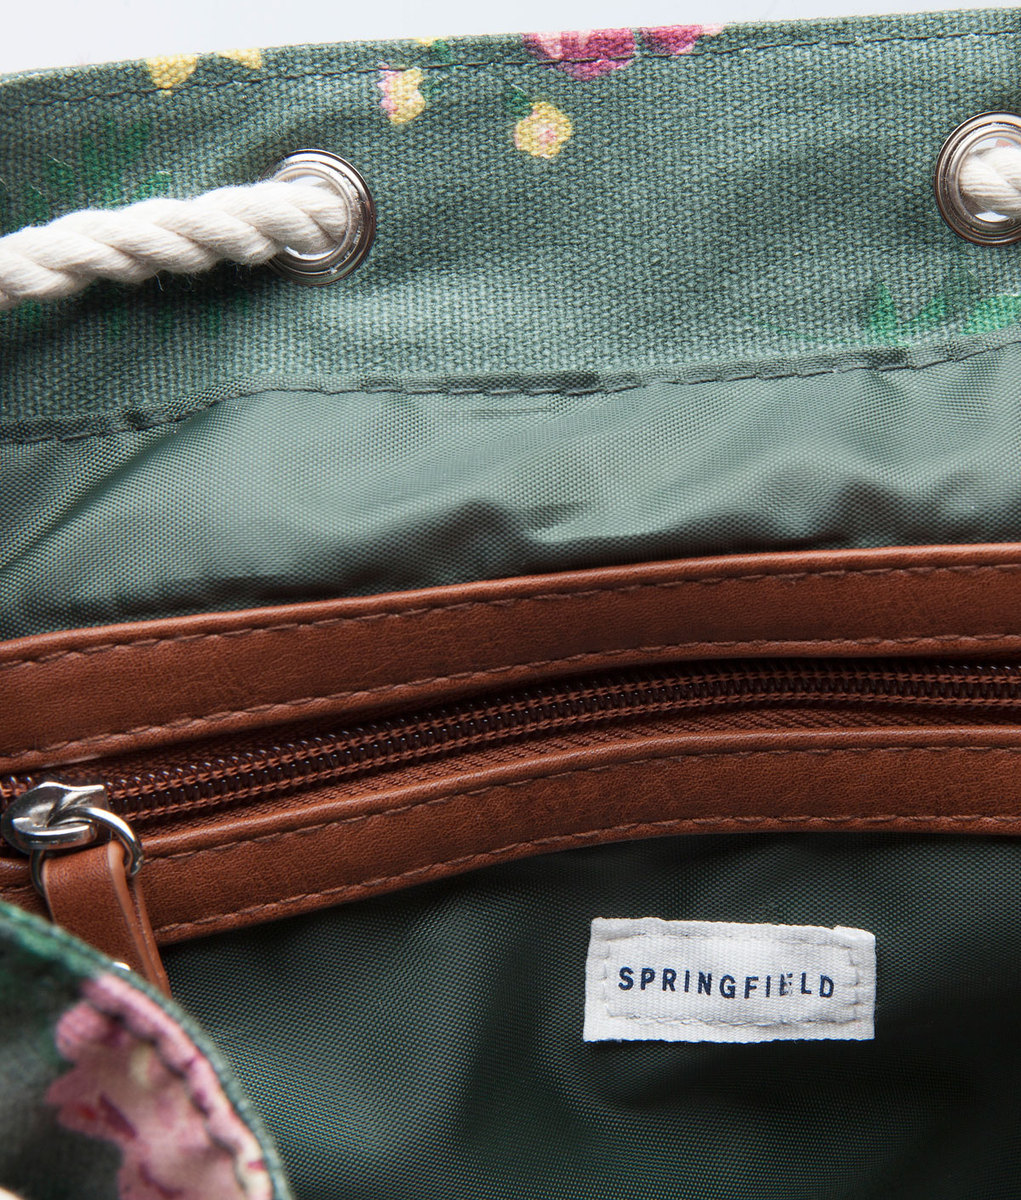 Springfield divatos virágmintás hátizsák 2015.02.24 #76348 fotója